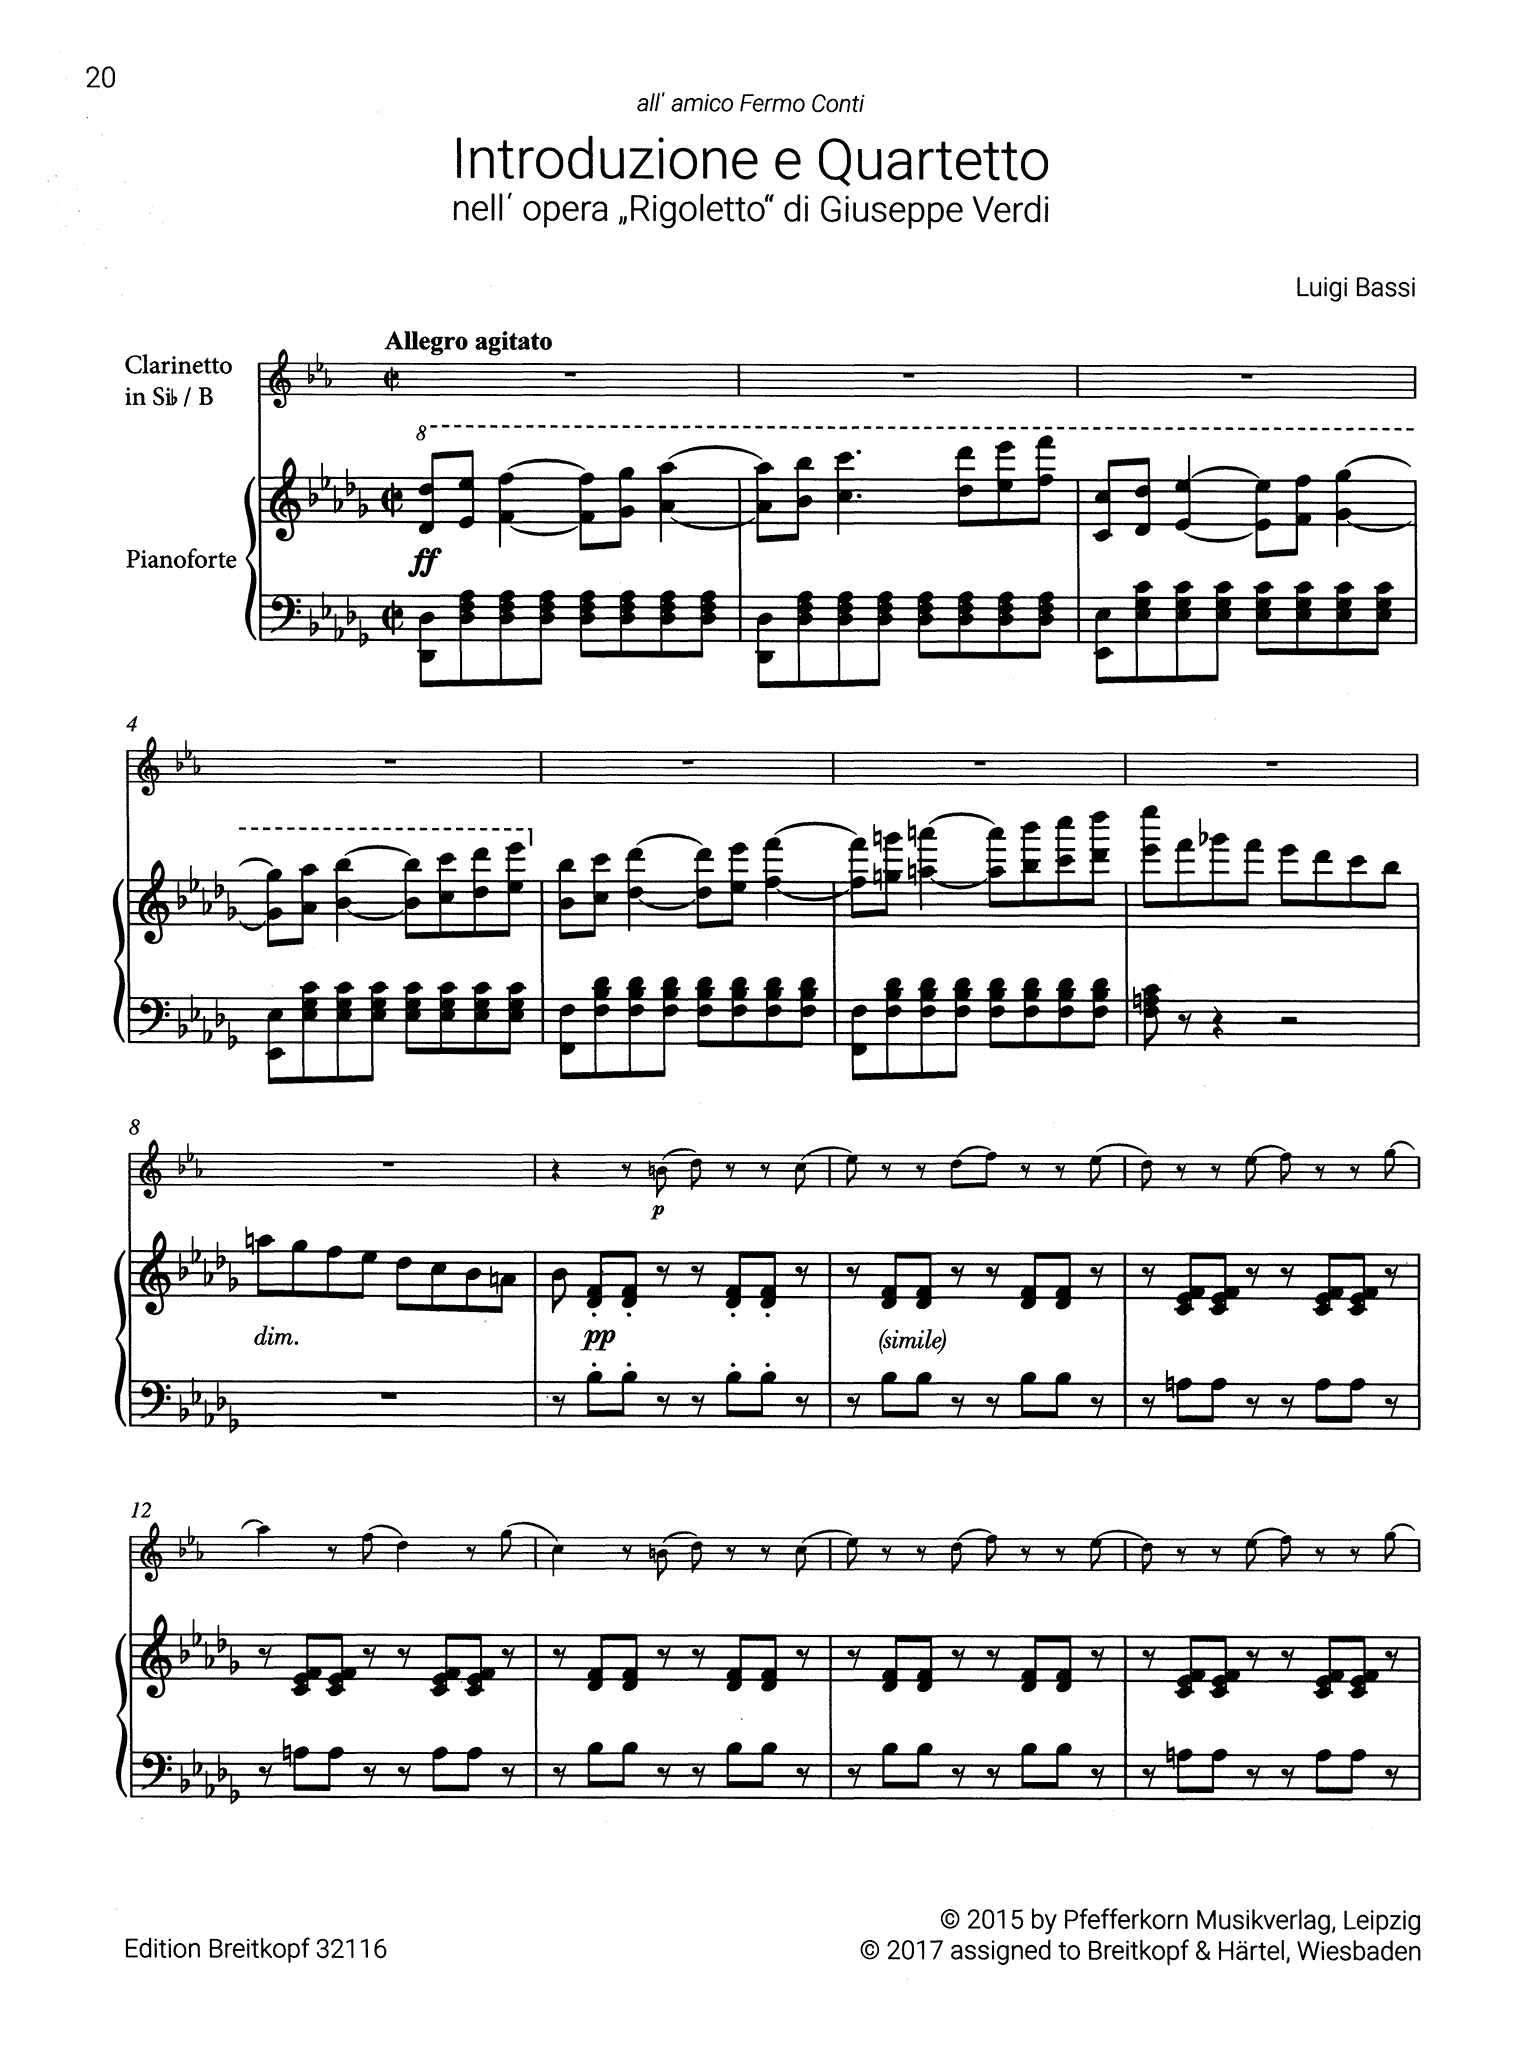 Bassi Introduction & Quartet after Verdi's Rigoletto Score